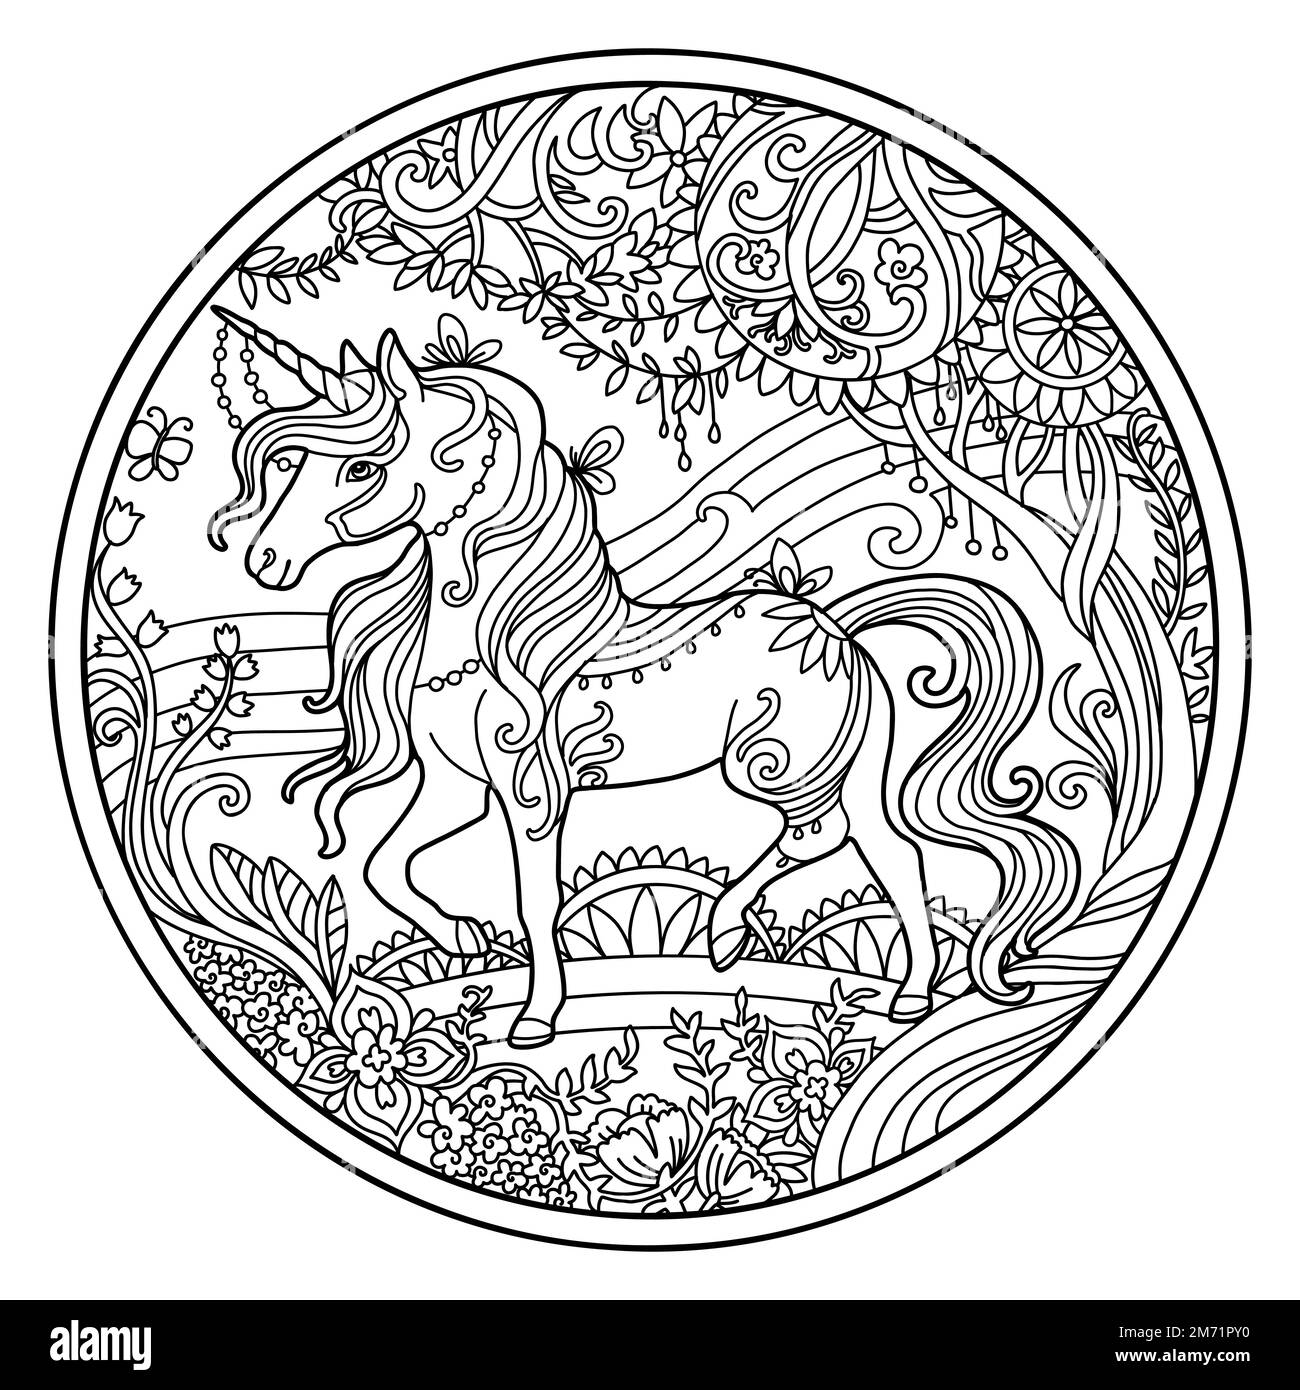 Pagina del libro di colorazione vettoriale unicorno ornato con fiori magici, composizione circolare. Disegno di schizzo a mano libera anti-sollecitazione con elementi grovigli e dentini. Per Illustrazione Vettoriale